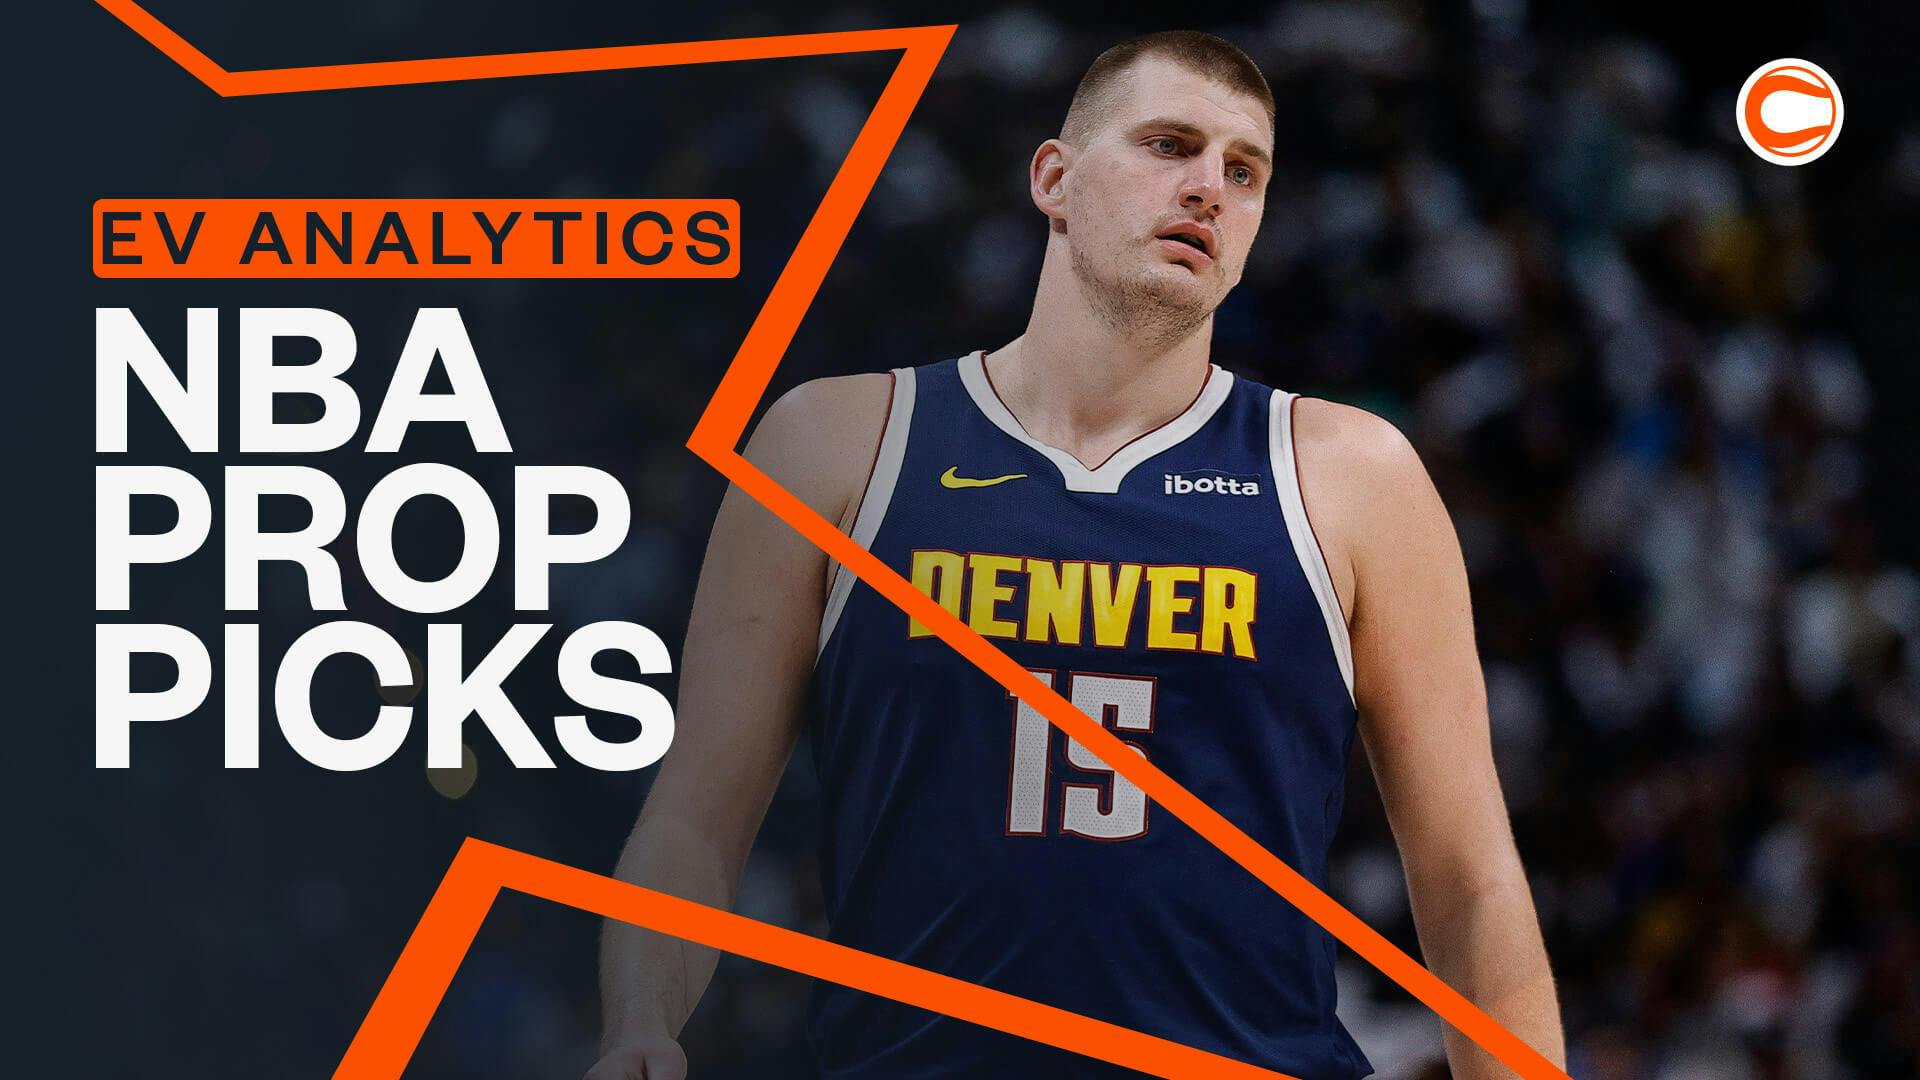 NBA Prop Picks Powered by EV Analytics: Expert Analysis from Jon Metler & Adam Scherer